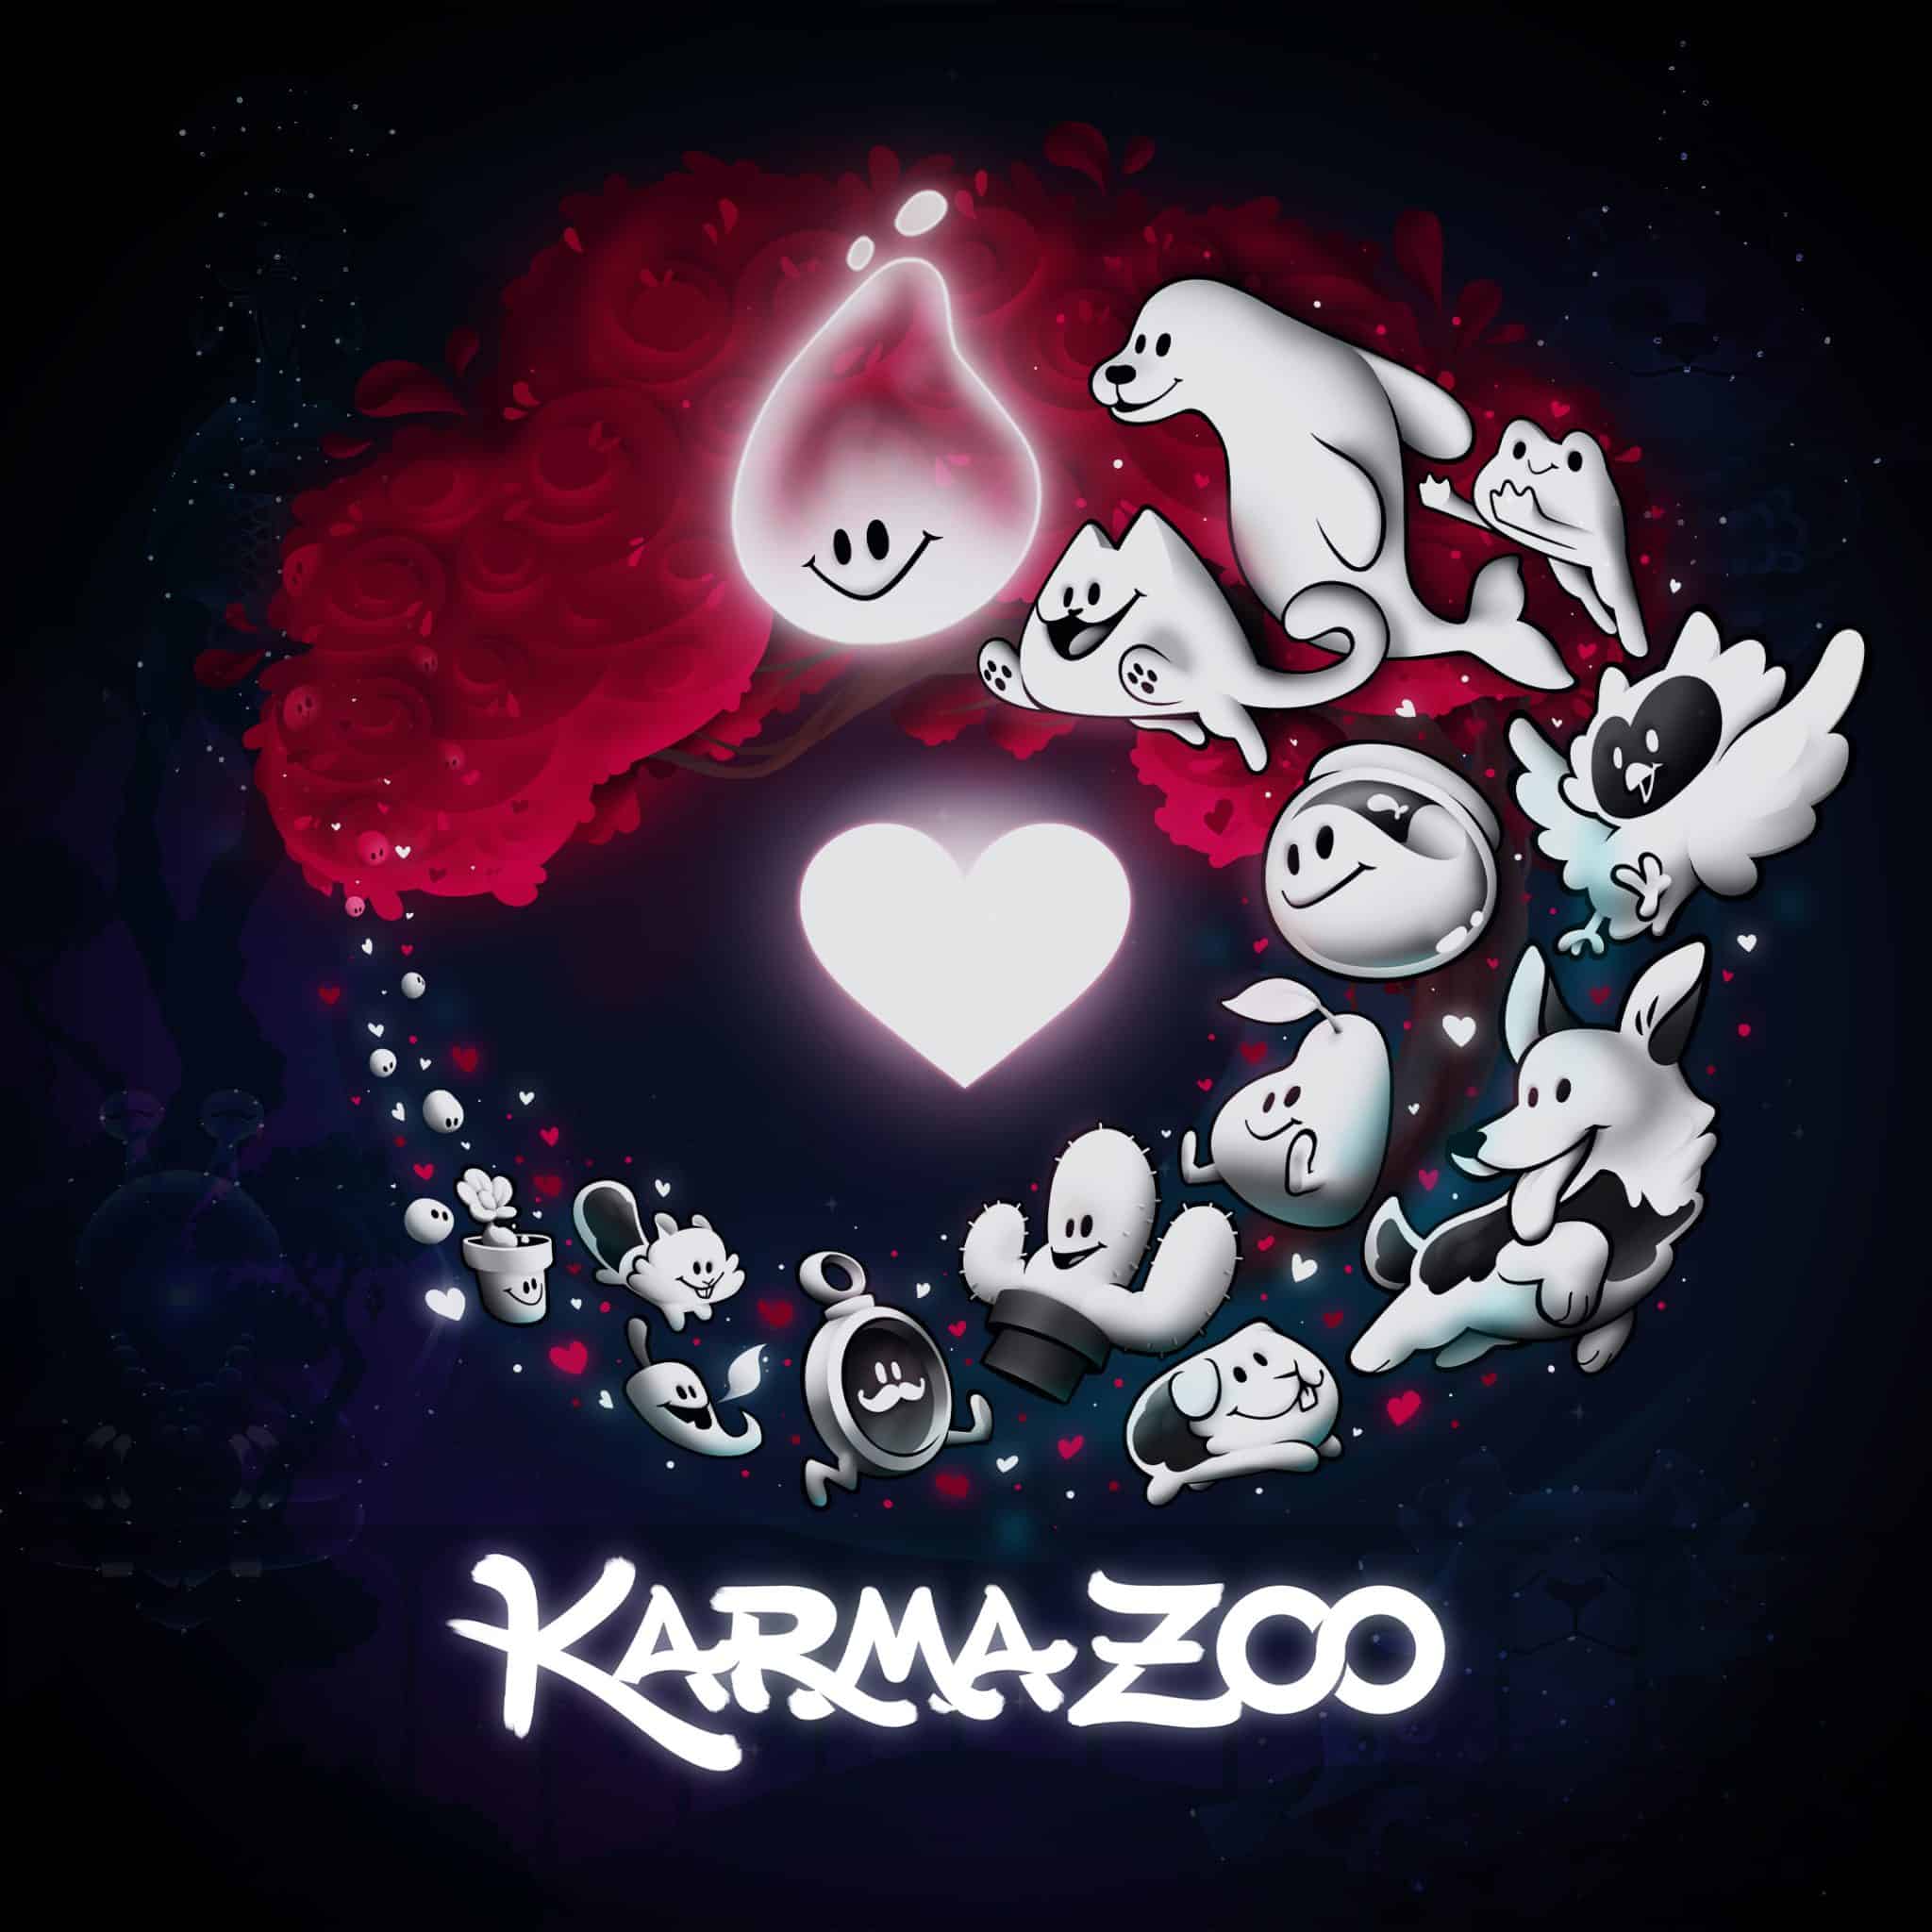 多人跨平台線上同樂《卡瑪動物園-KarmaZoo》將在2023年登場